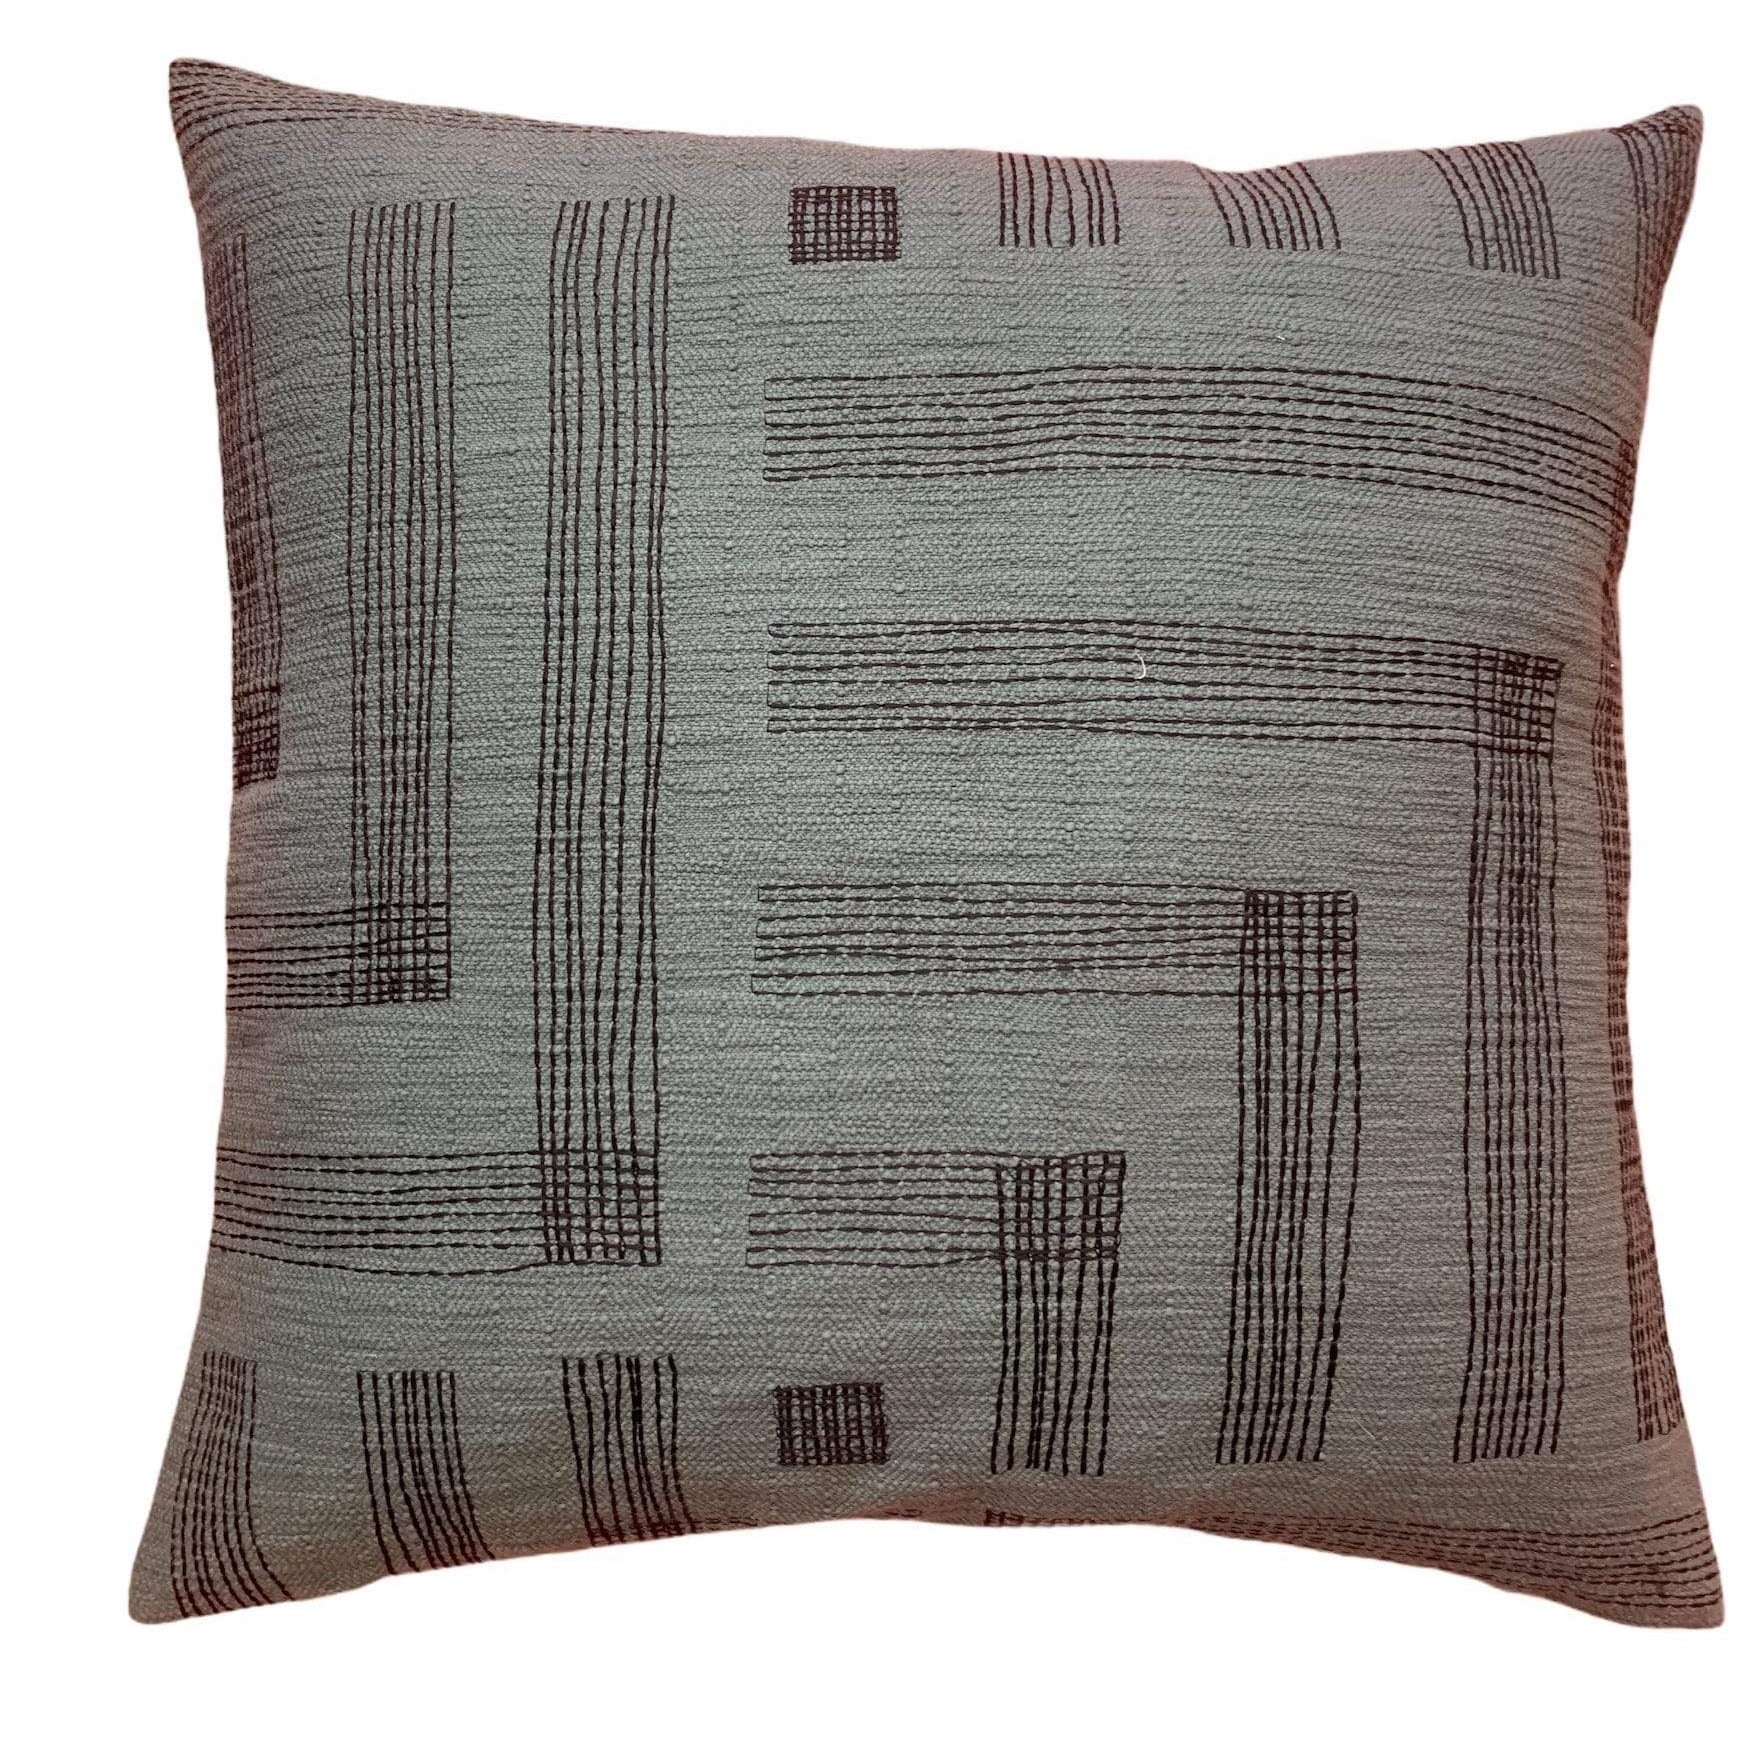 Stitch Lines 55 x 55cm Cushion